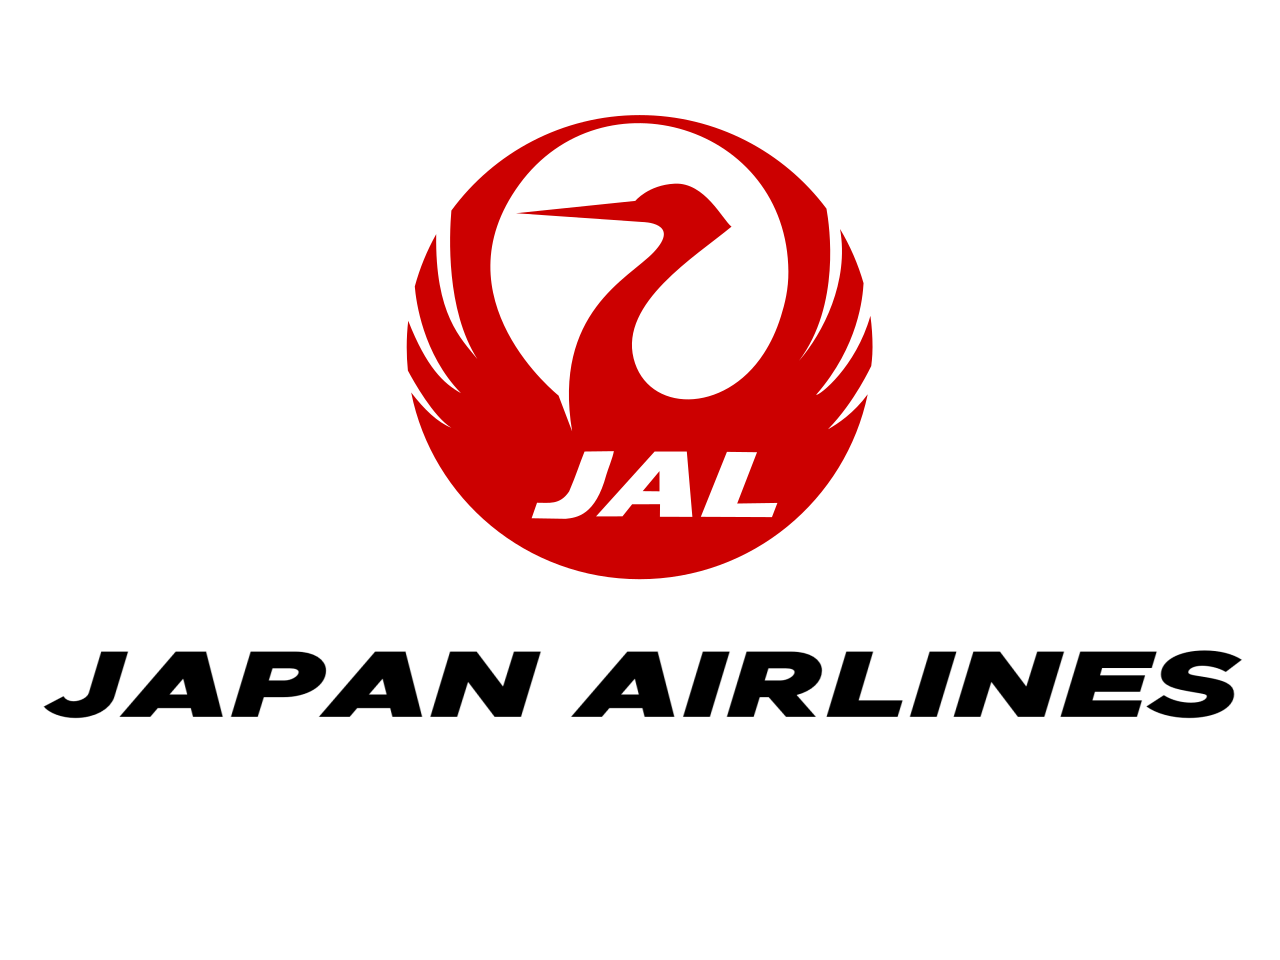 Das Logo von Japan Airlines zeigt einen Kranich, dessen Form an traditionelle Familienwappen erinnert.